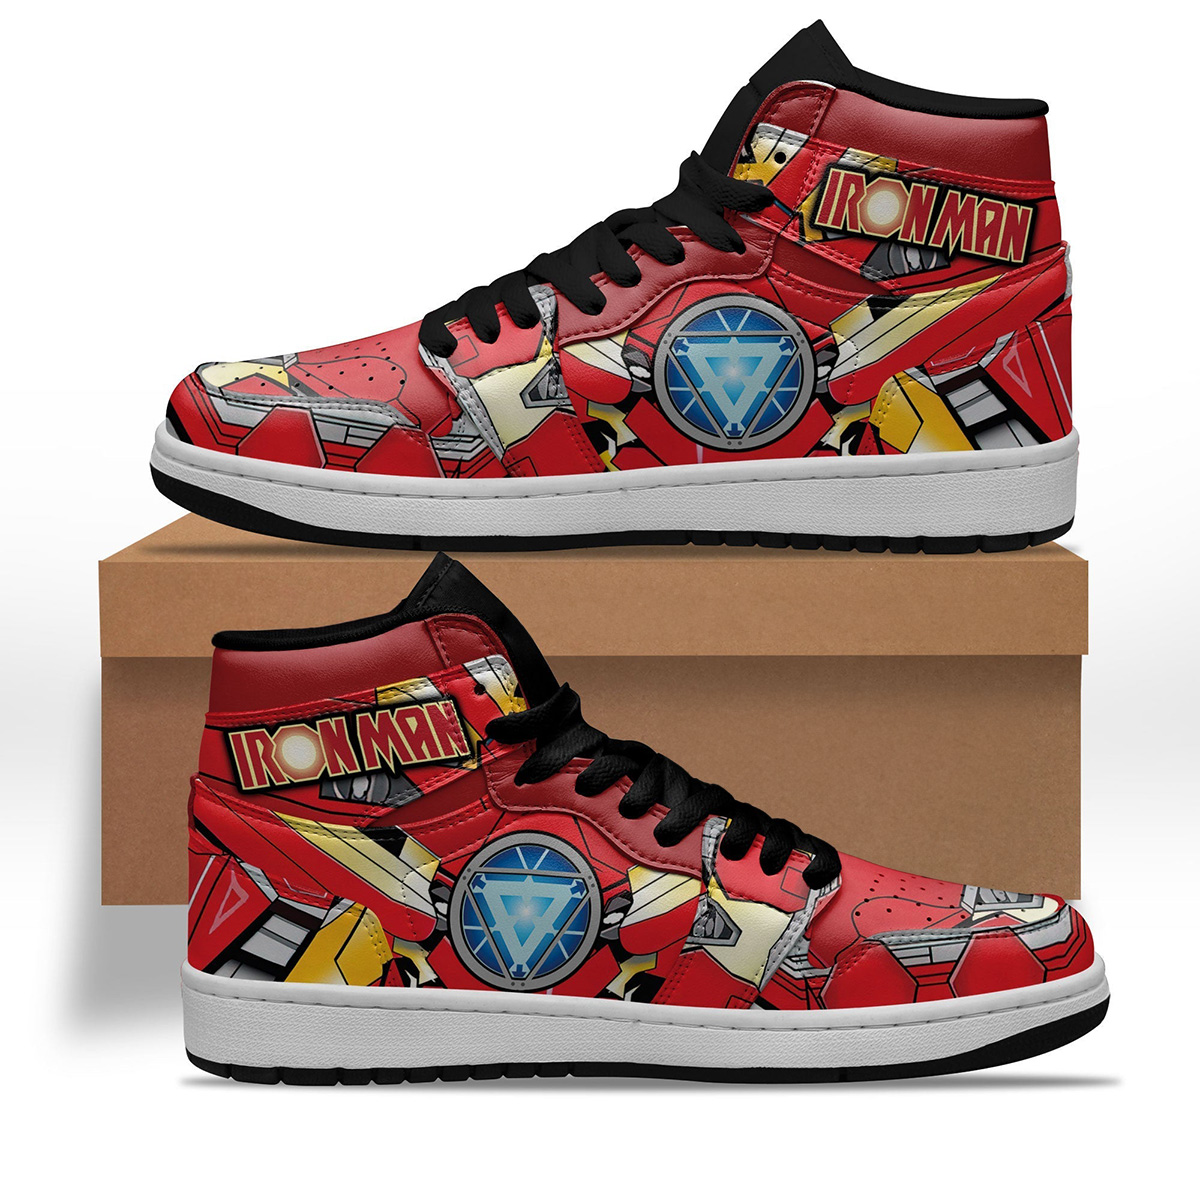 Avenger Ironman Shoes Custom